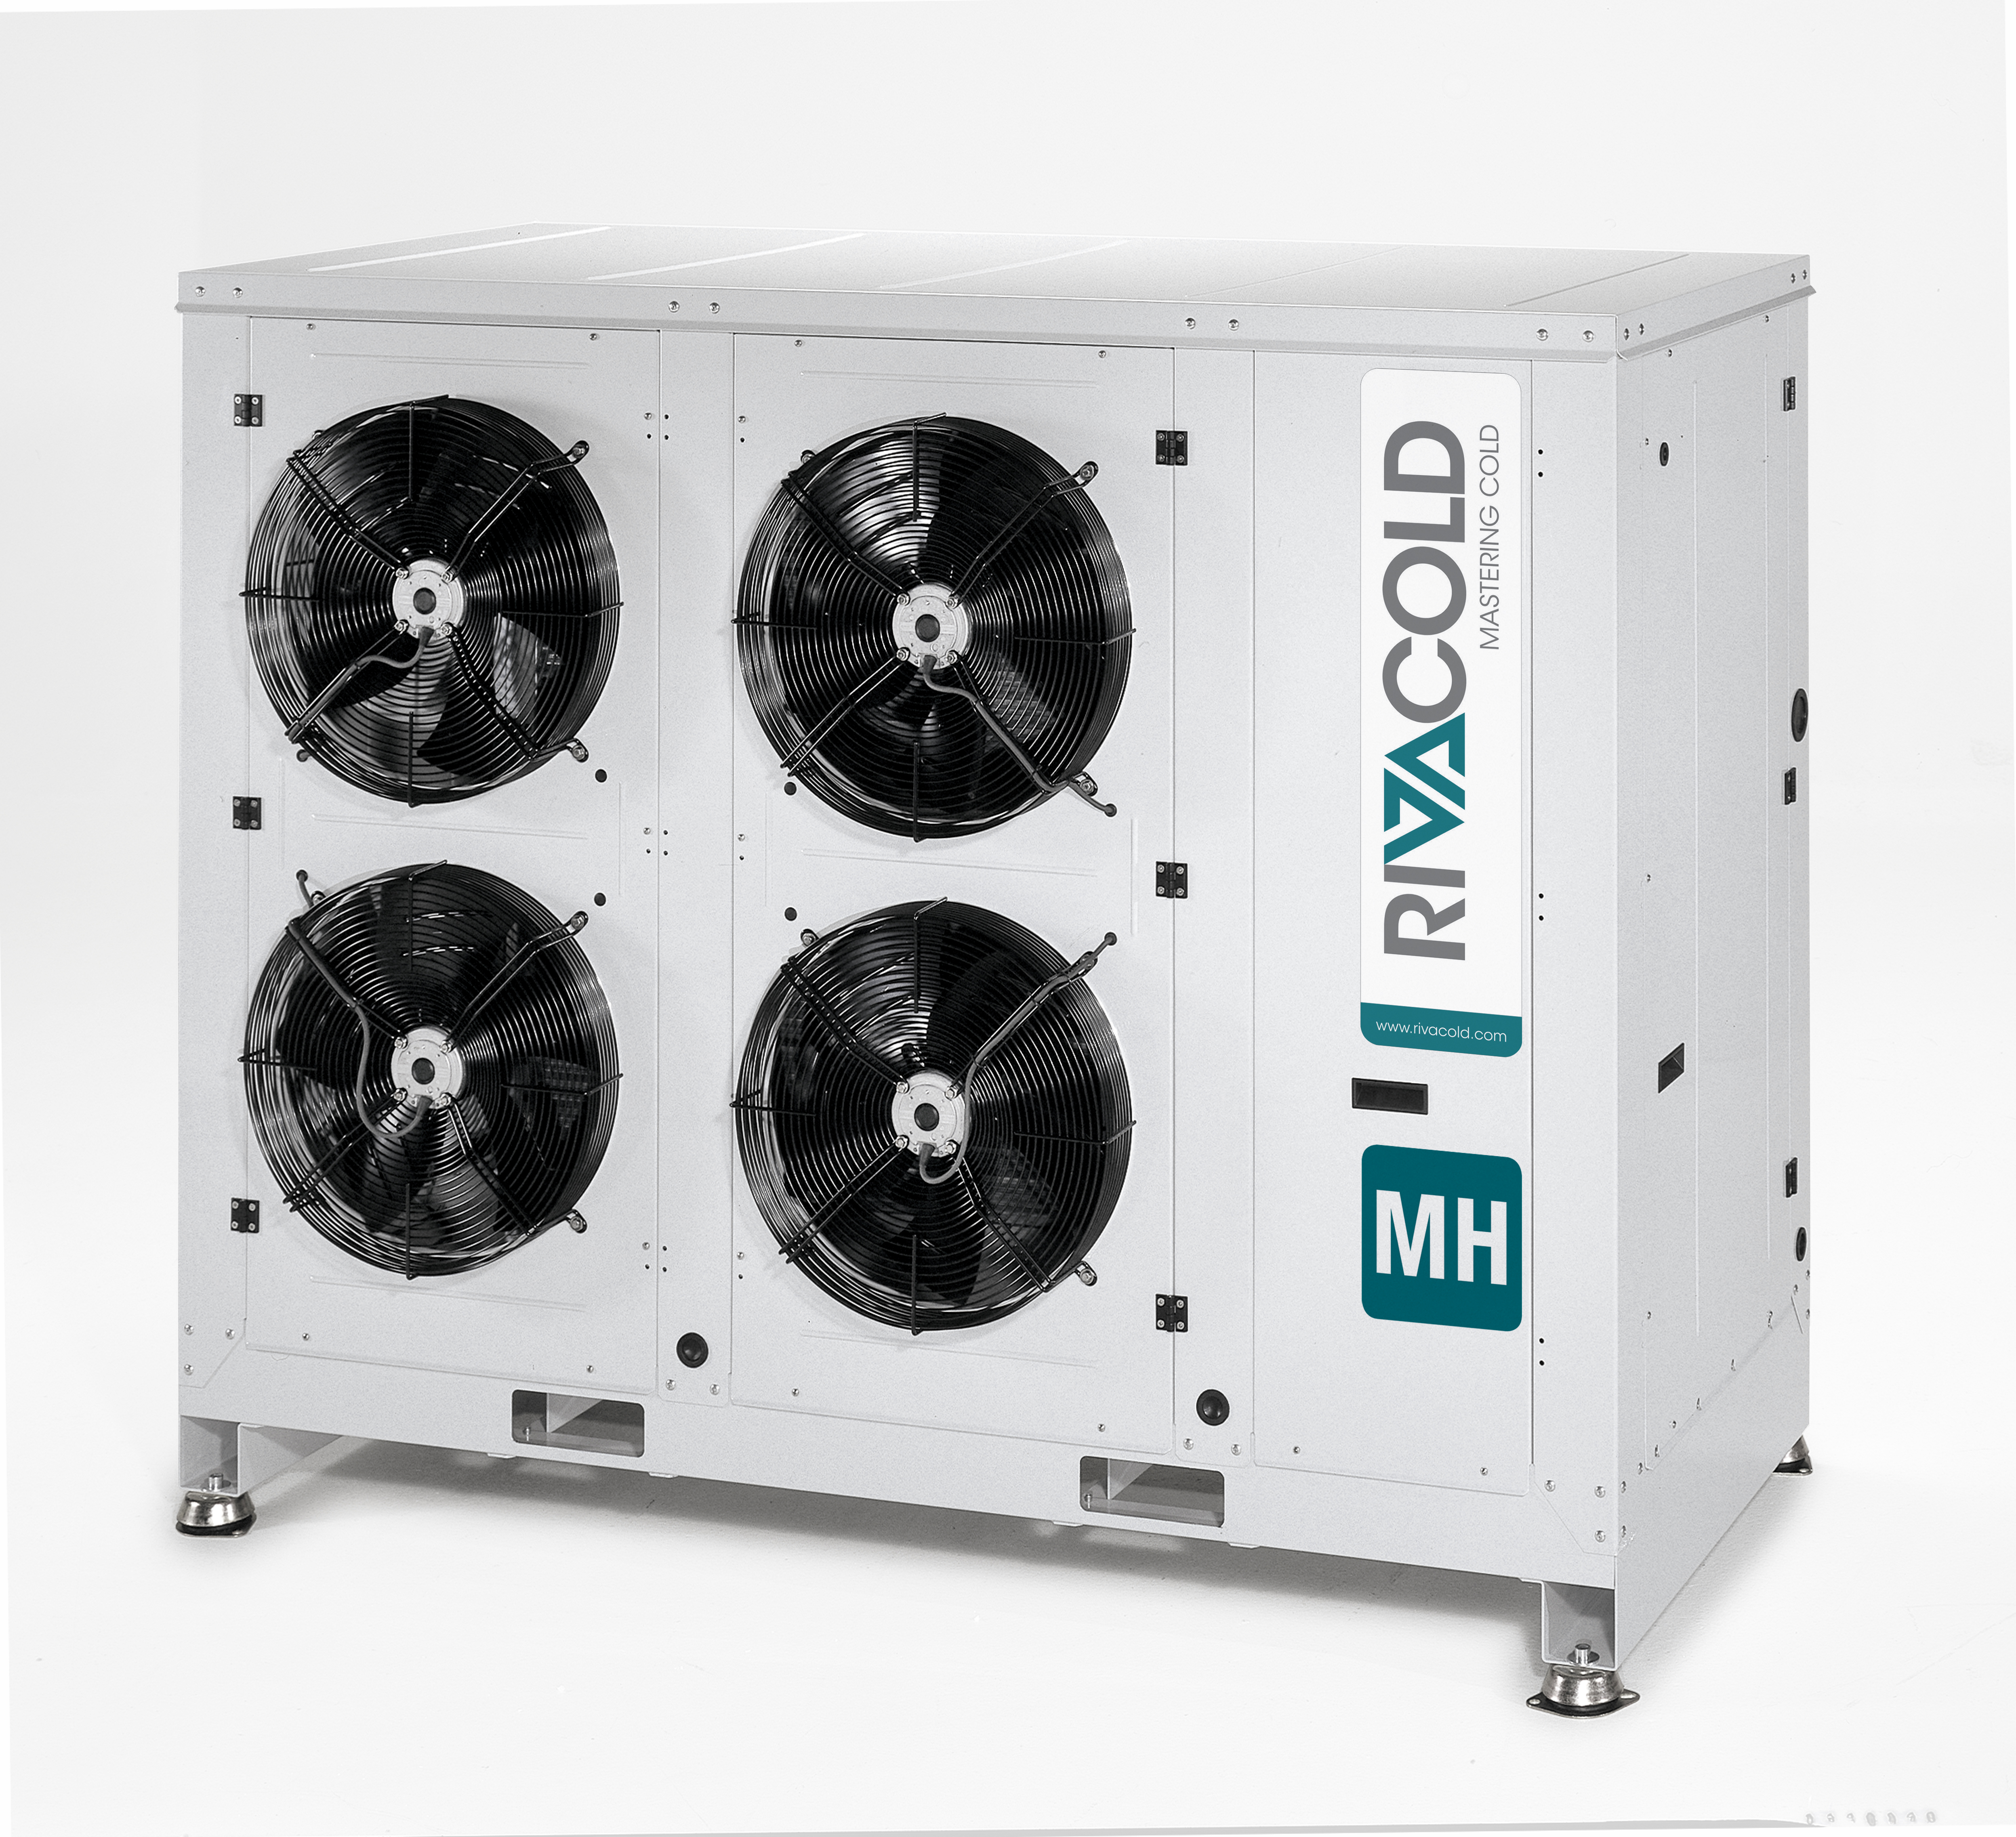 MH - Unidades condensadoras con carrozado insonorizado y compresor alternativo, semiherético y scroll